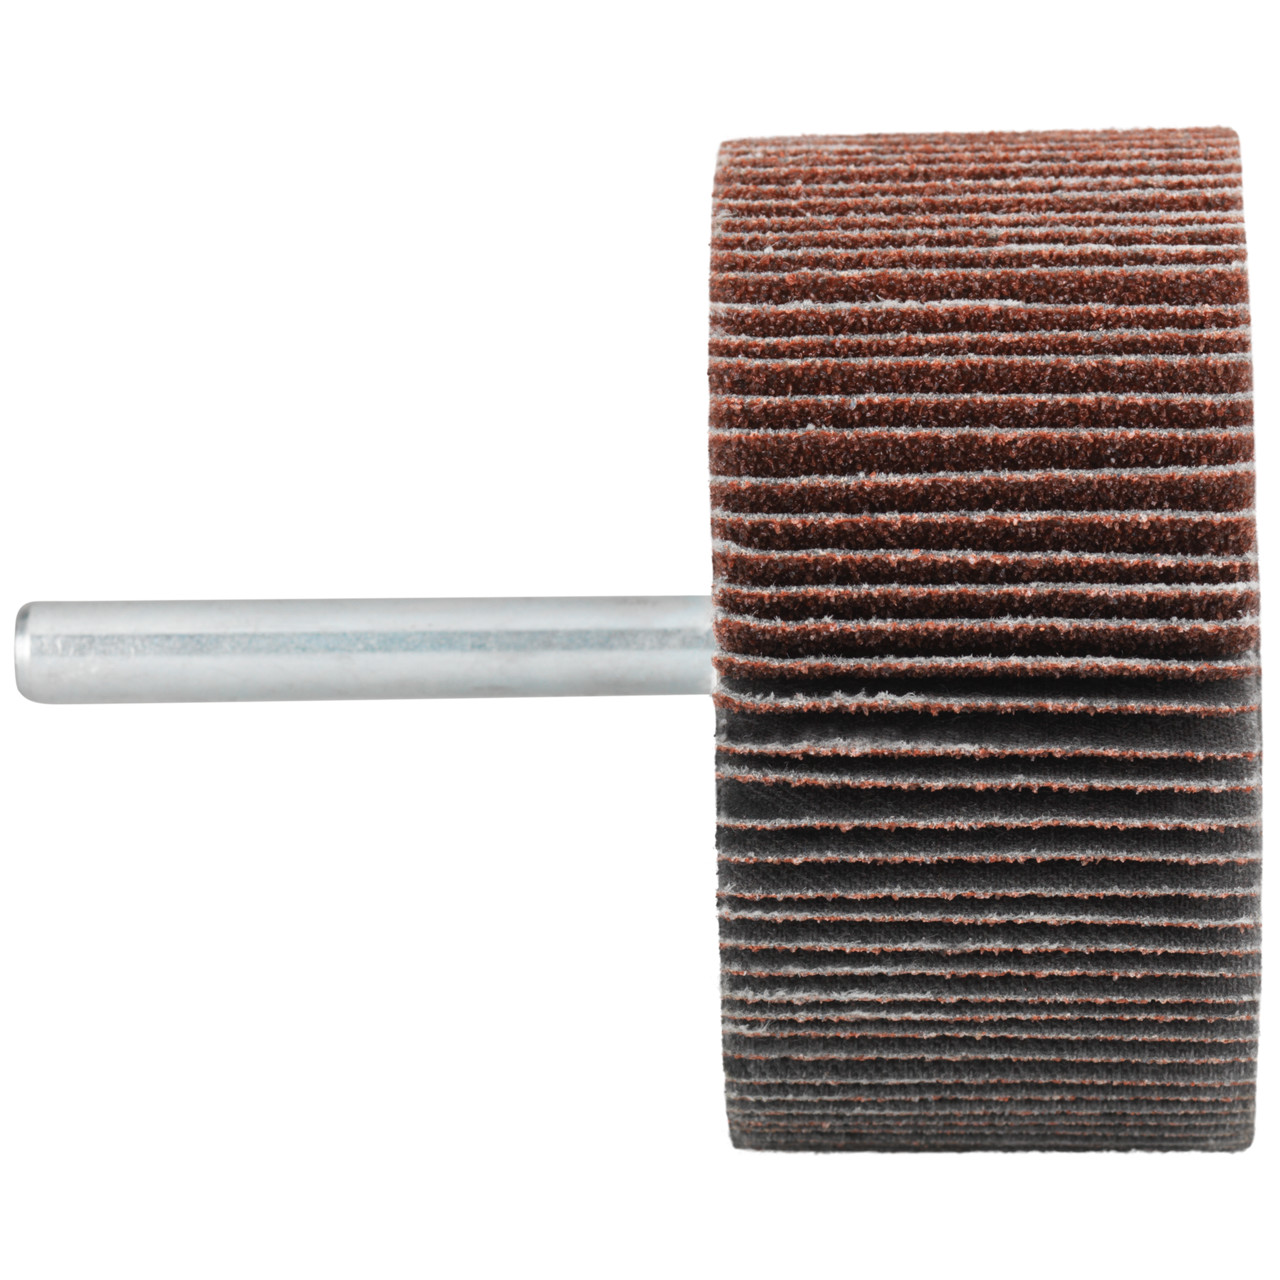 Tyrolit A-P01 C X Pennen DxD 60x20 Voor staal, roestvast staal en non-ferrometalen, P80, vorm: 52LA, Art. 816954